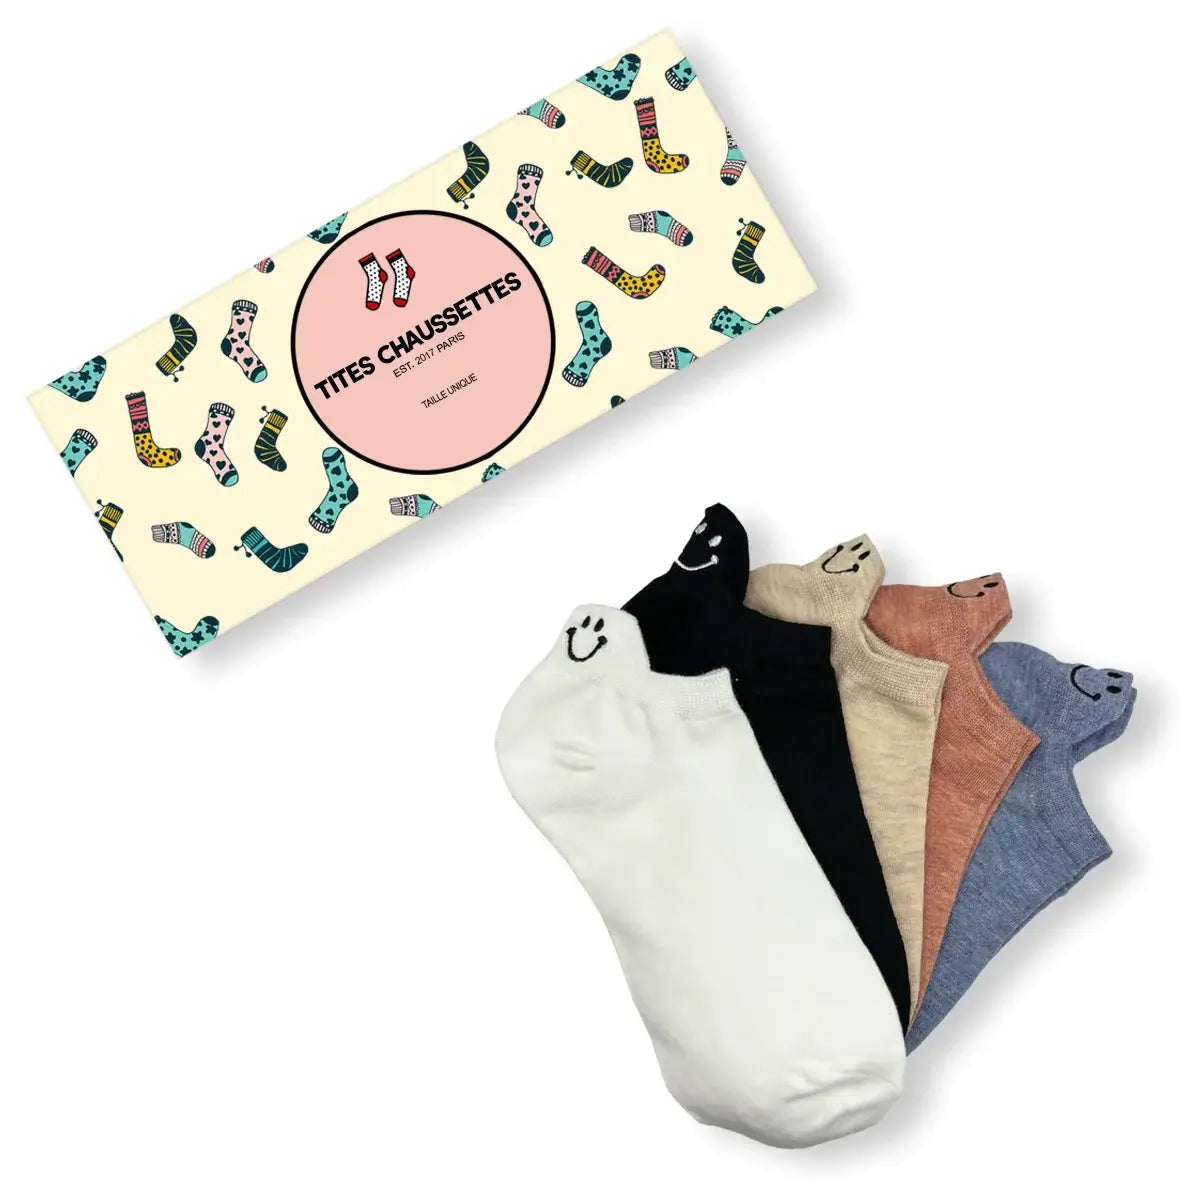 Lot de Chaussettes en coton à languette Happy à motif smiley pour femme | Chaussettes douces et respirantes | Un cadeau parfait pour les femmes de tous âges | Disponibles à un prix abordable.